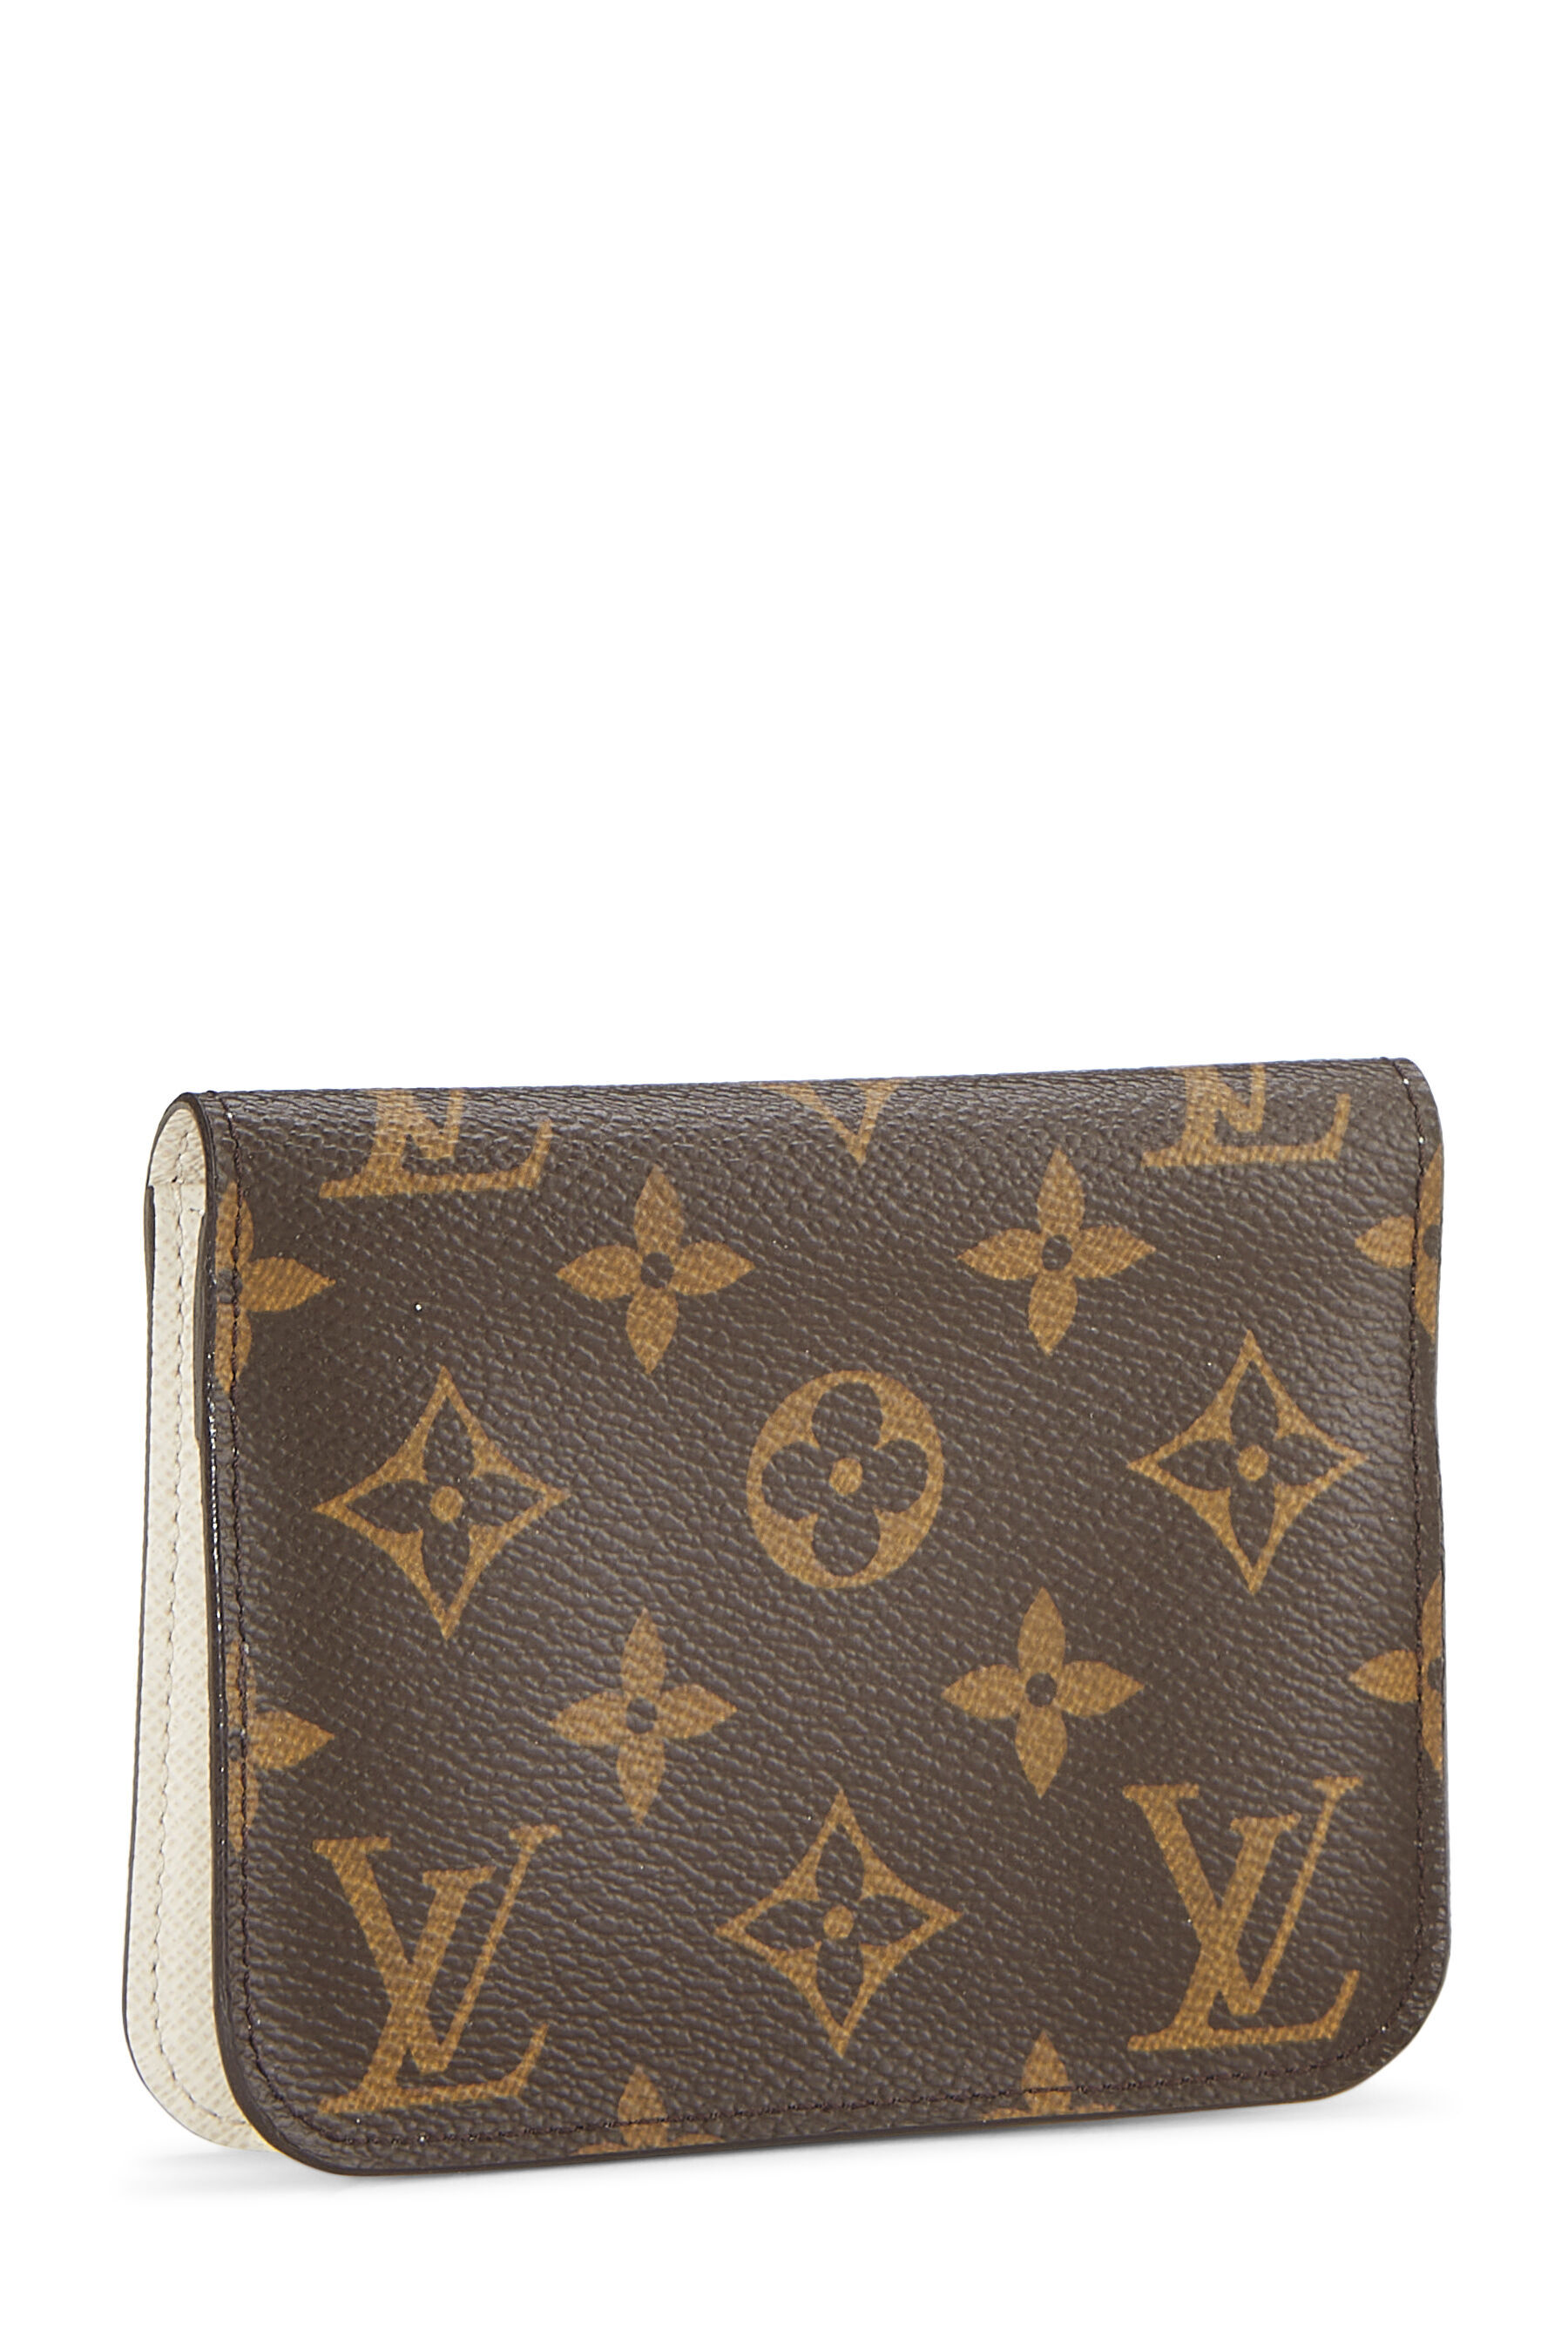 Louis Vuitton | Bags | Louis Vuitton Monogram Multicolor Portemonnaie Plat Coin  Purse Wallet | Poshmark